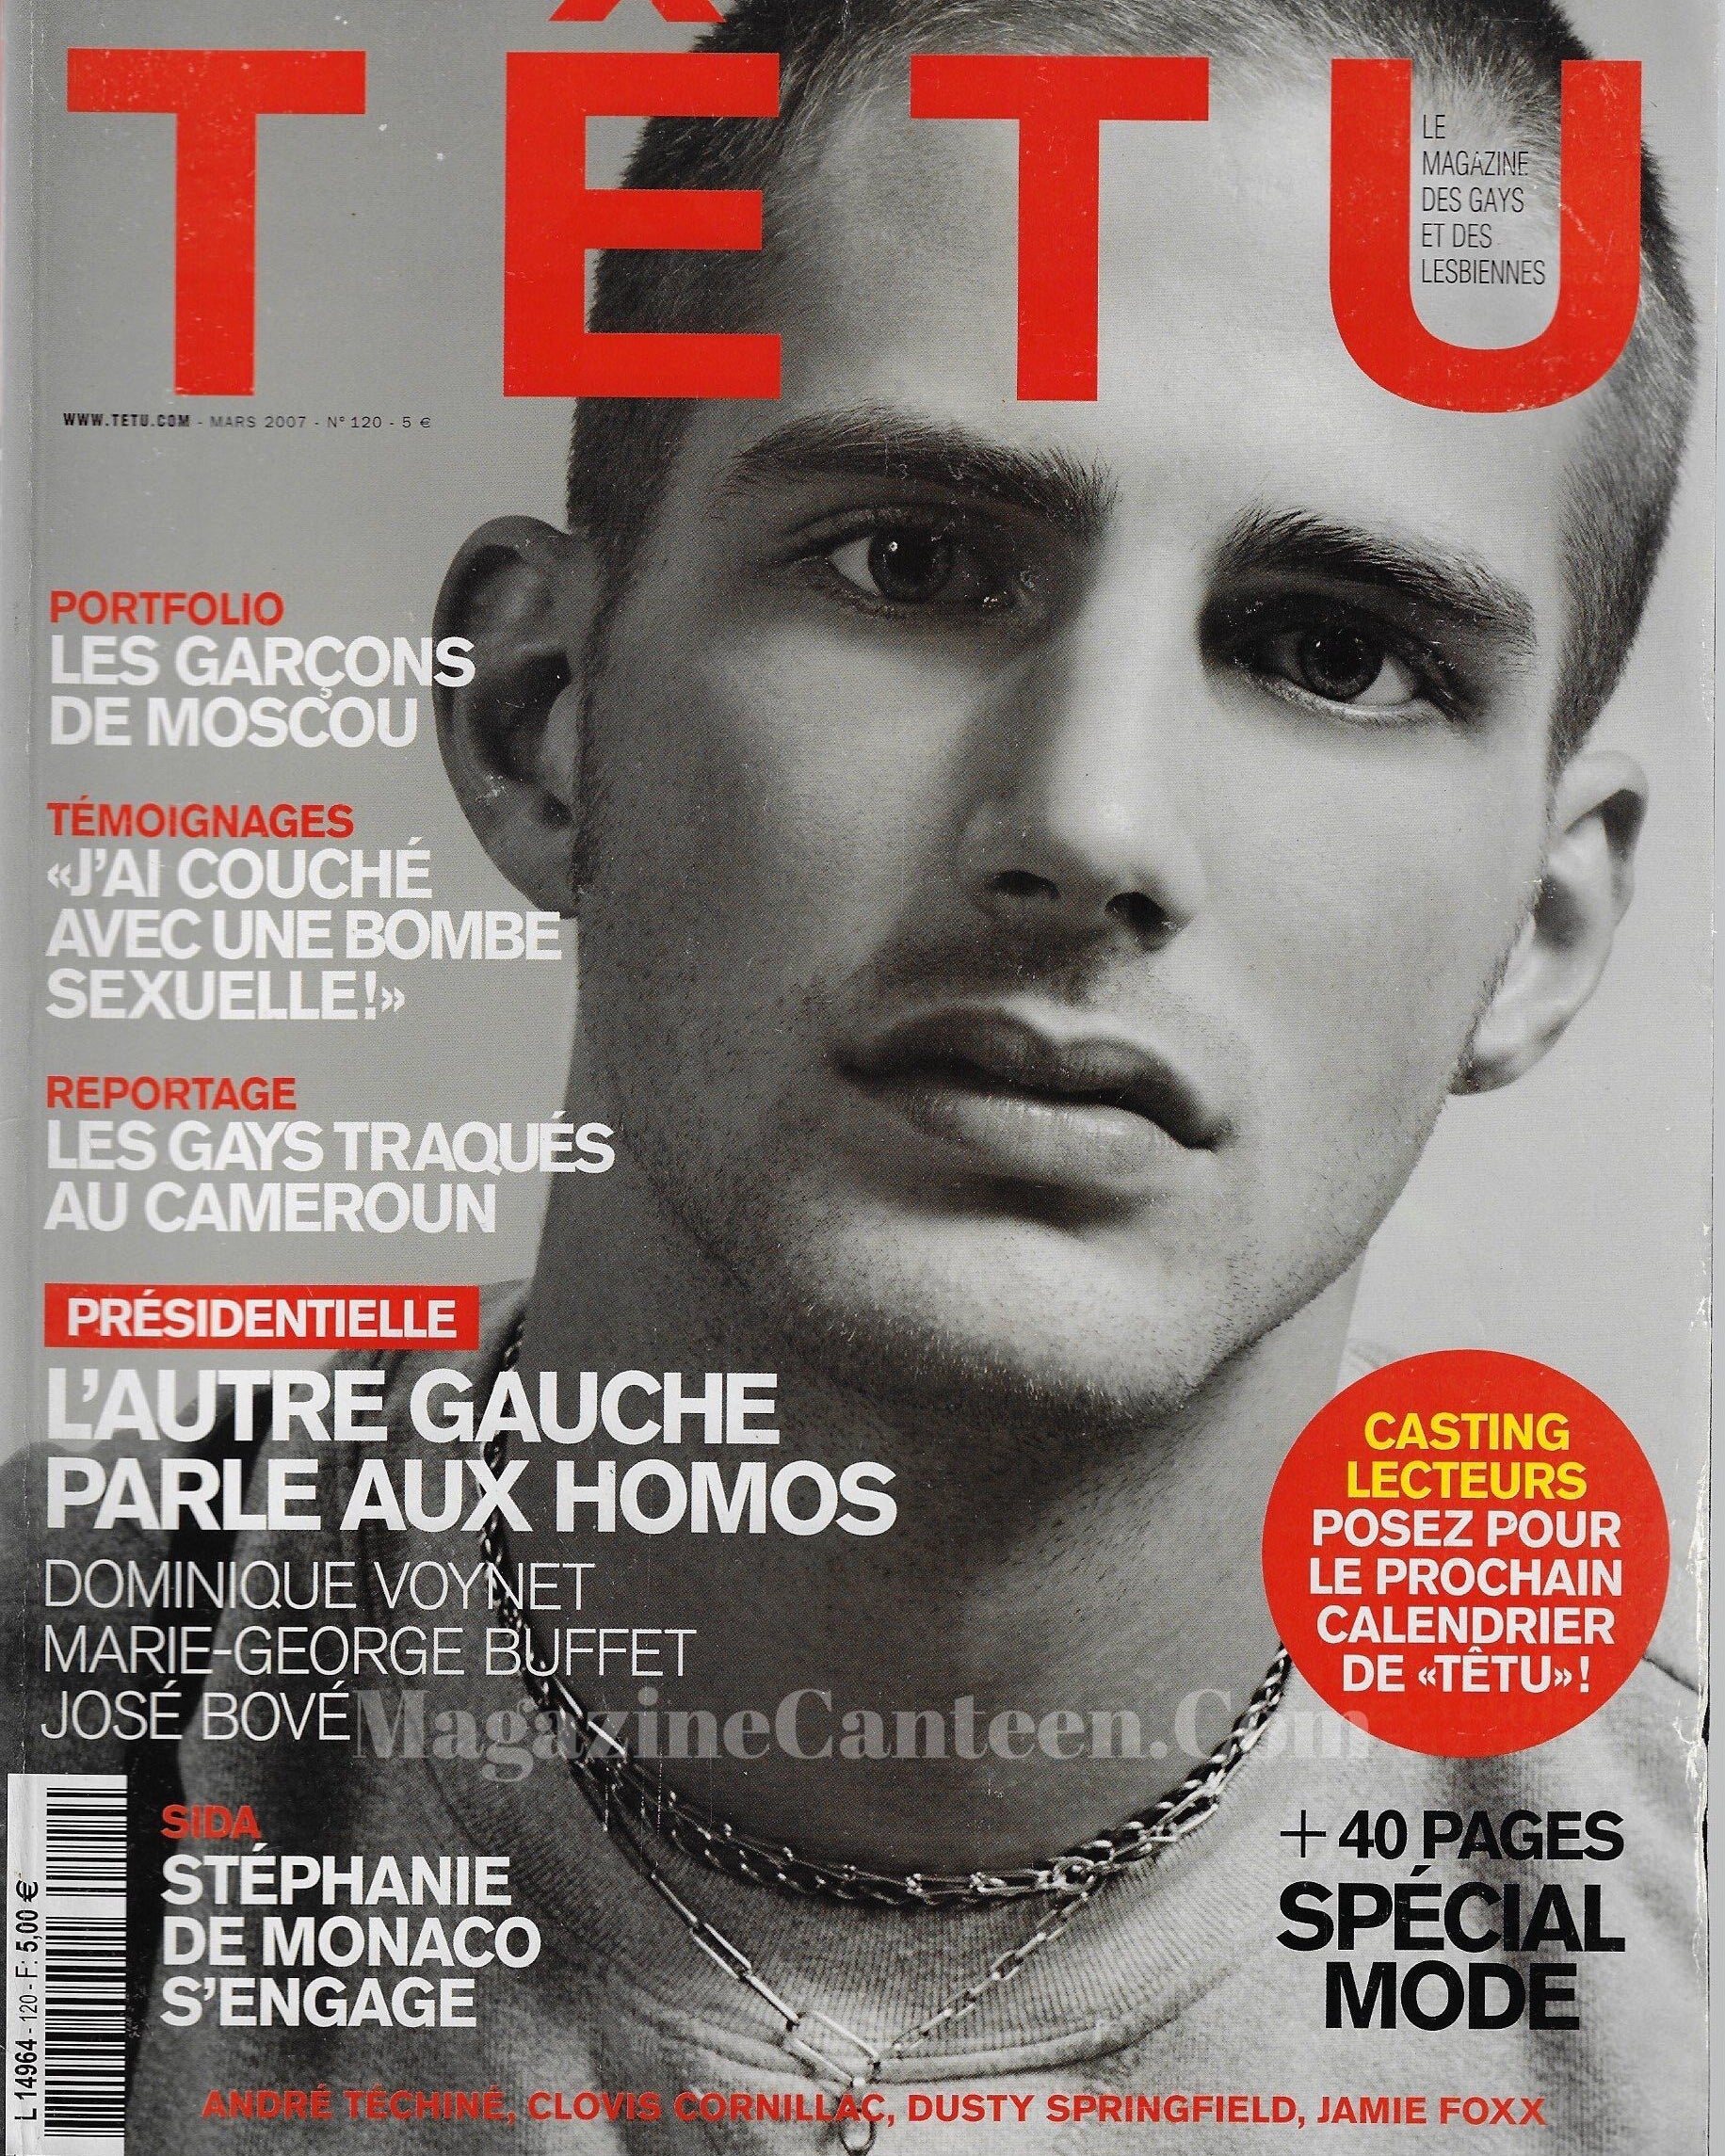 Tetu Magazine - Matt Loewen naked